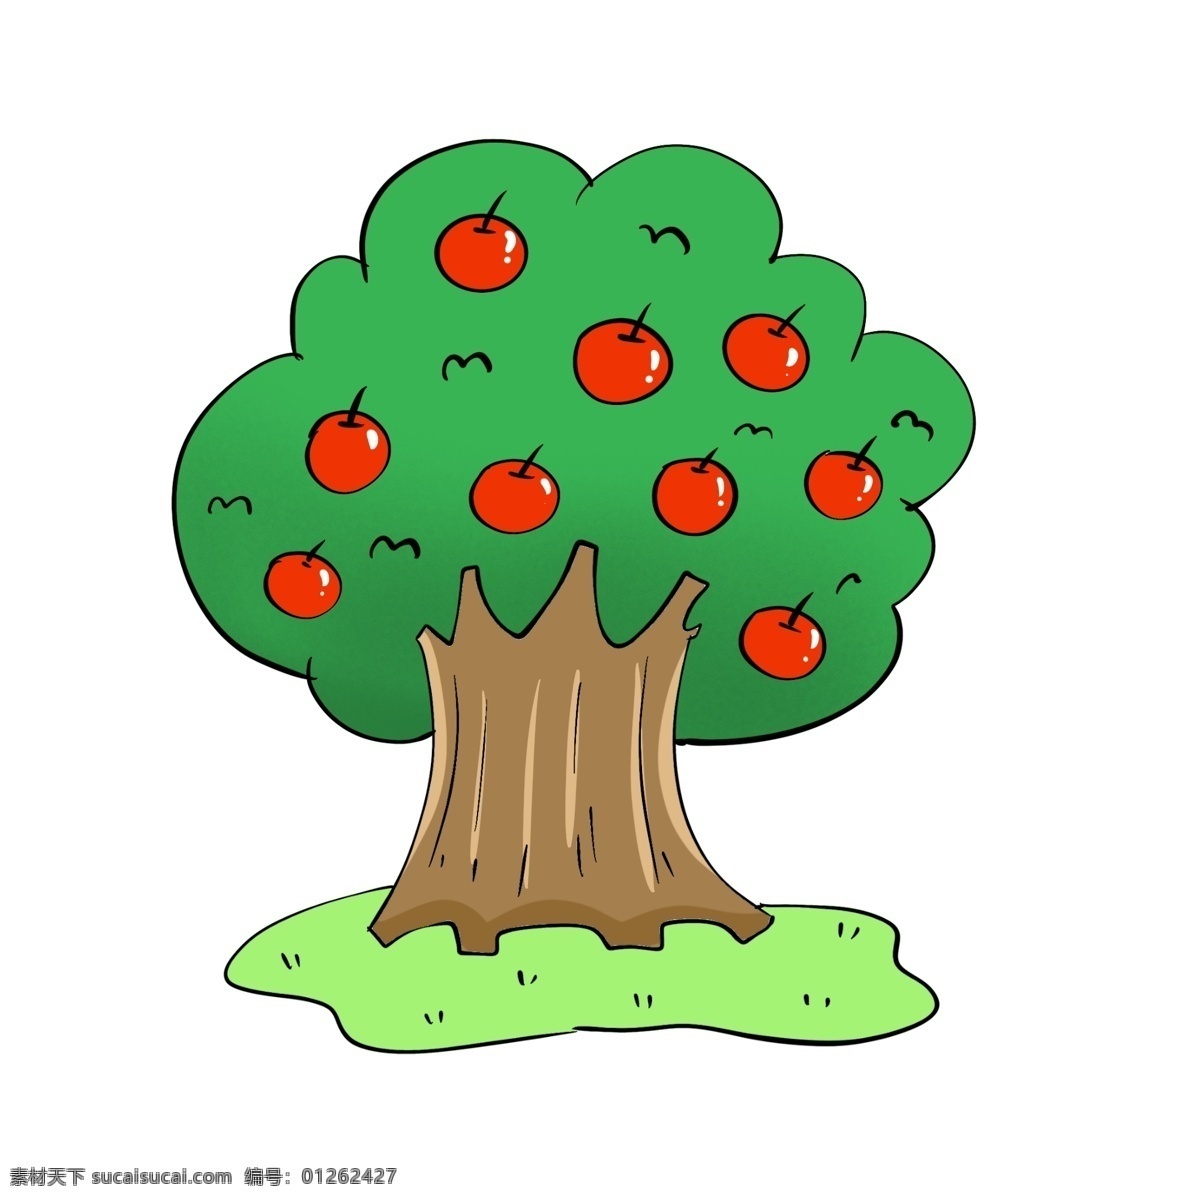 原创 手绘 水果 苹果树 苹果 卡通苹果 矢量卡通苹果 手绘苹果 矢量手绘苹果 苹果素材 卡通水果 手绘水果 矢量水果 矢量卡通水果 矢量手绘水果 卡通水果素材 设 生物世界